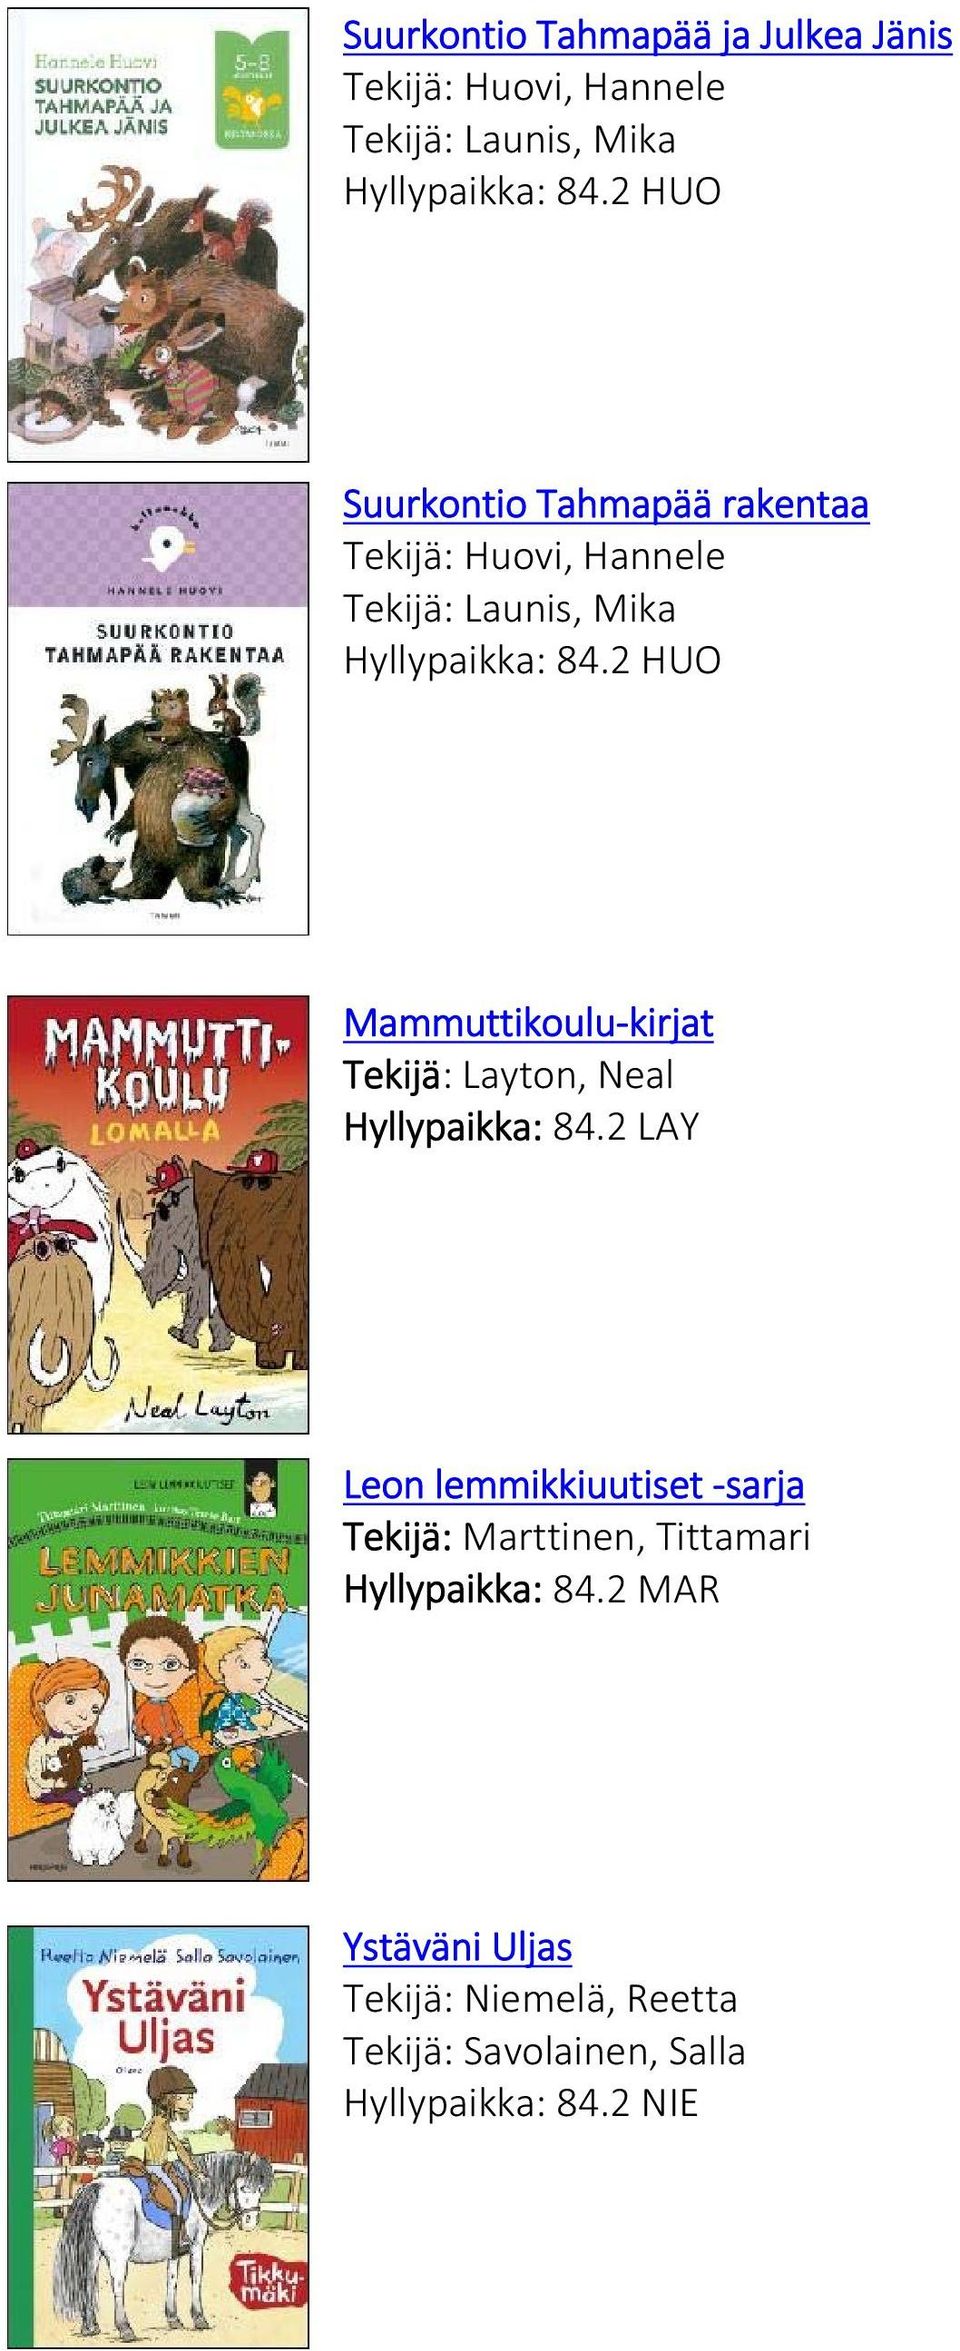 2 HUO Mammuttikoulu kirjat Tekijä: Layton, Neal Hyllypaikka: 84.